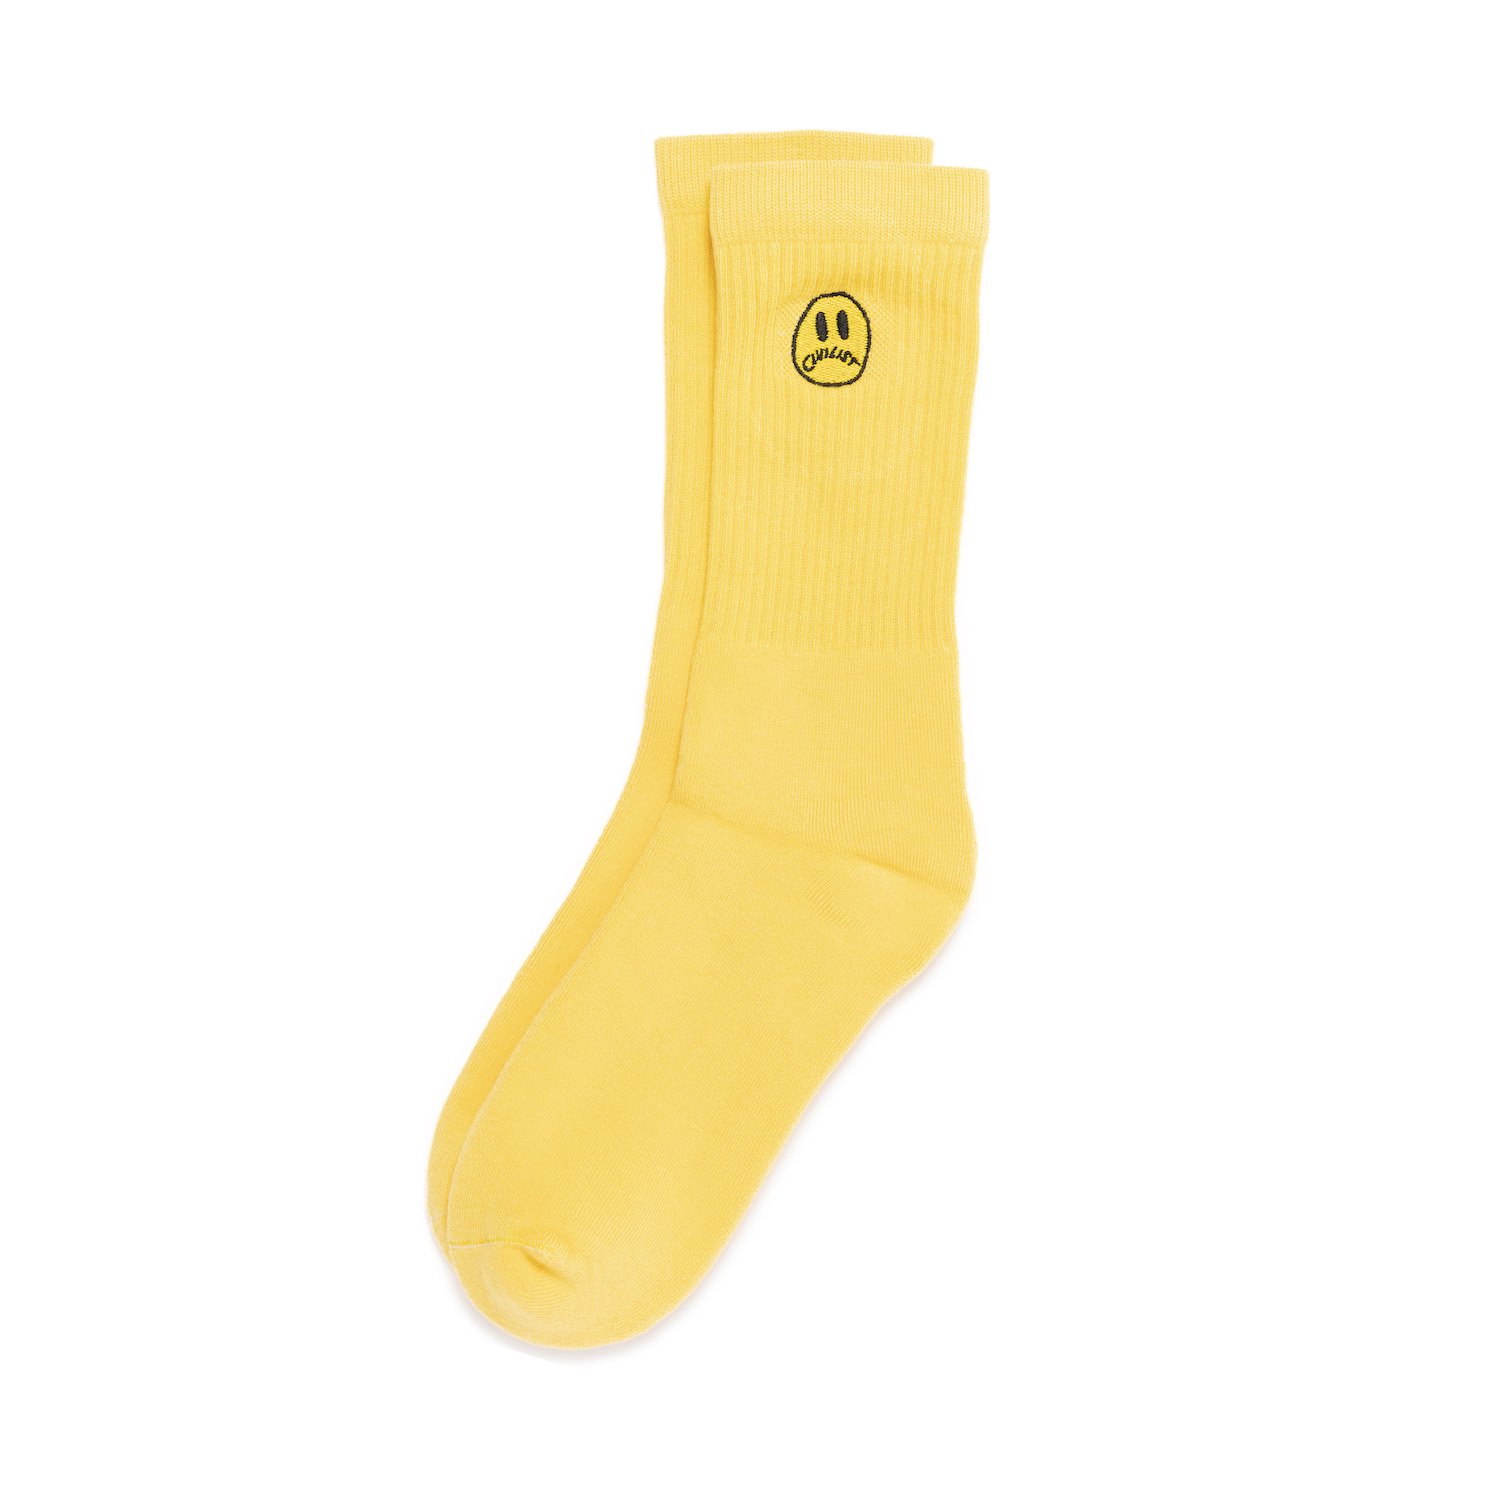 CIVILIST<br>Mini Smiler Socks<br>